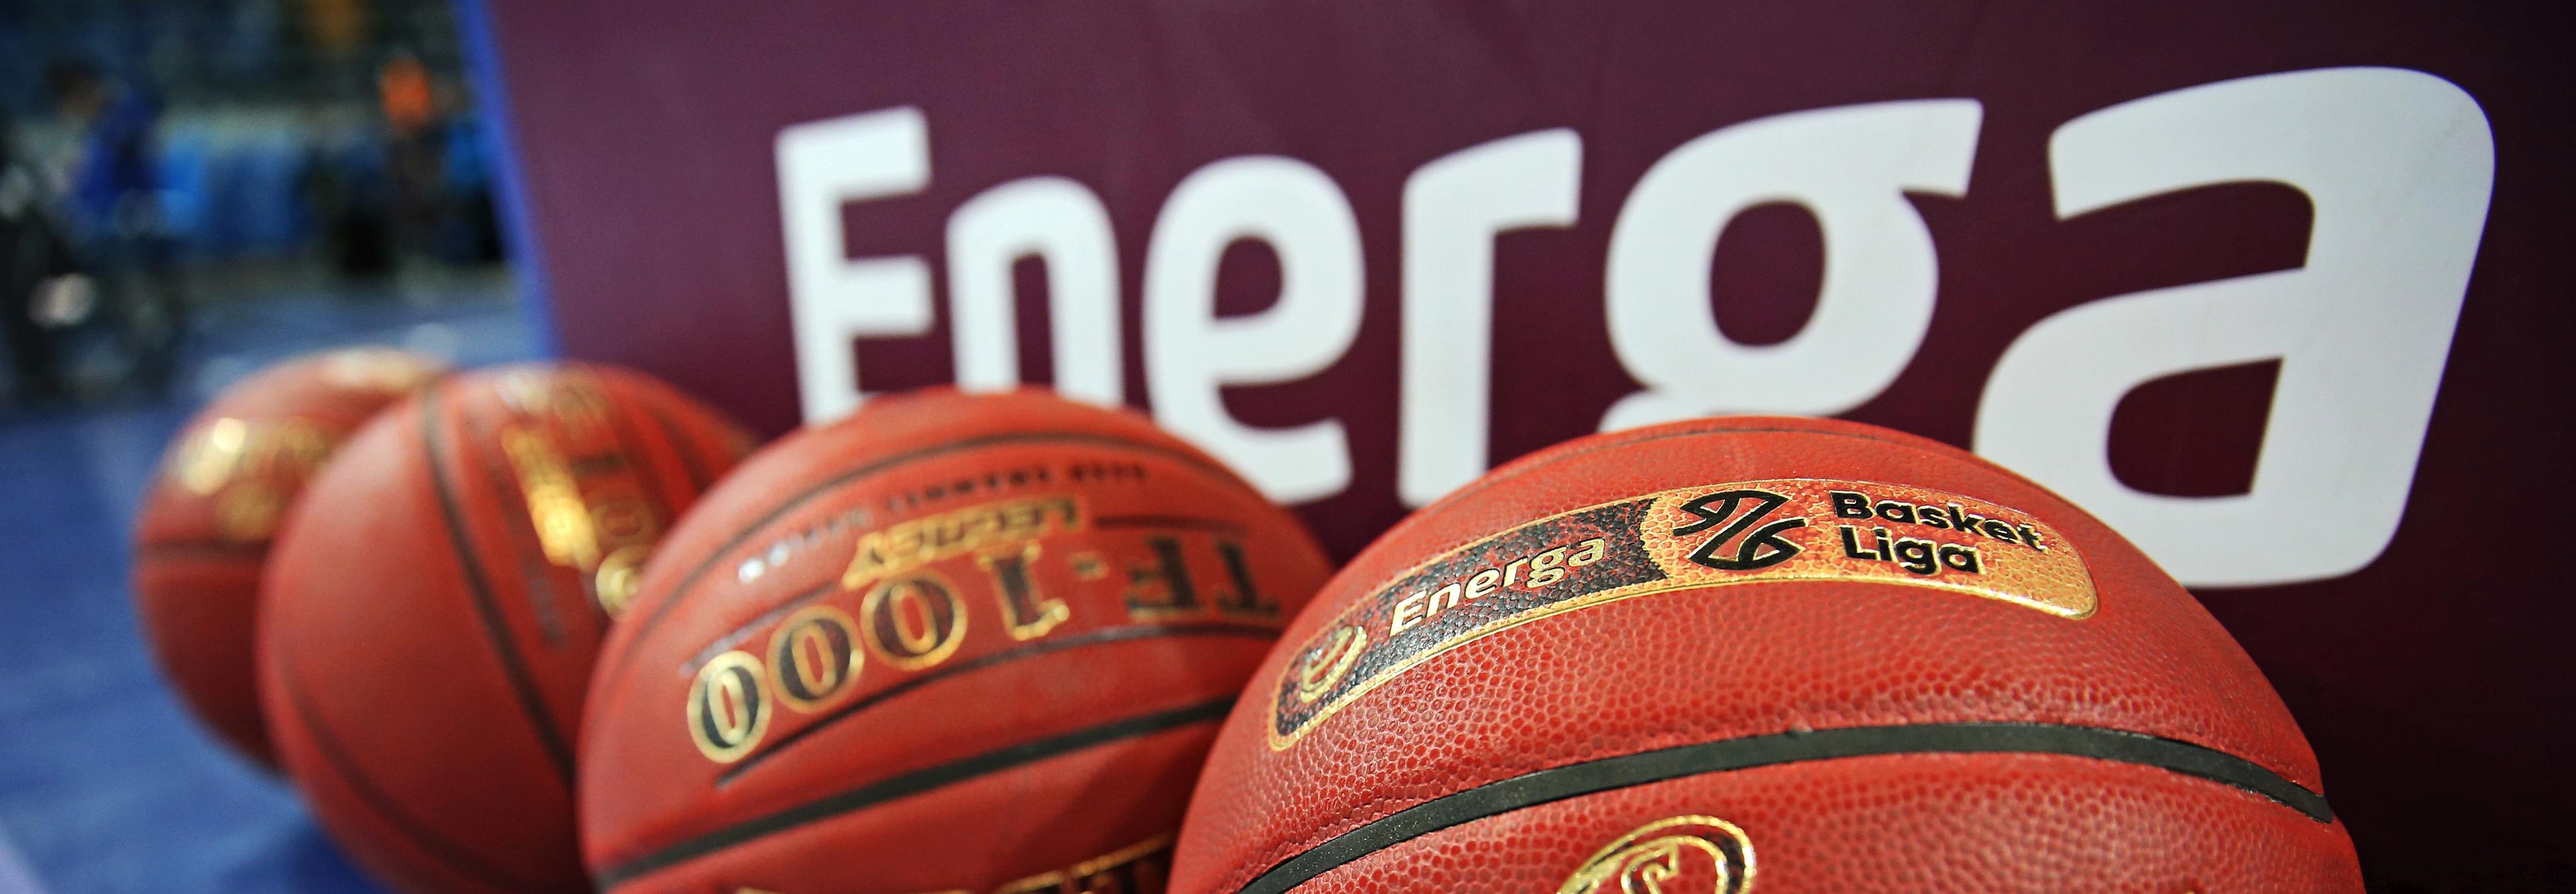 Okienko transferowe w Energa Basket Lidze zamknięte